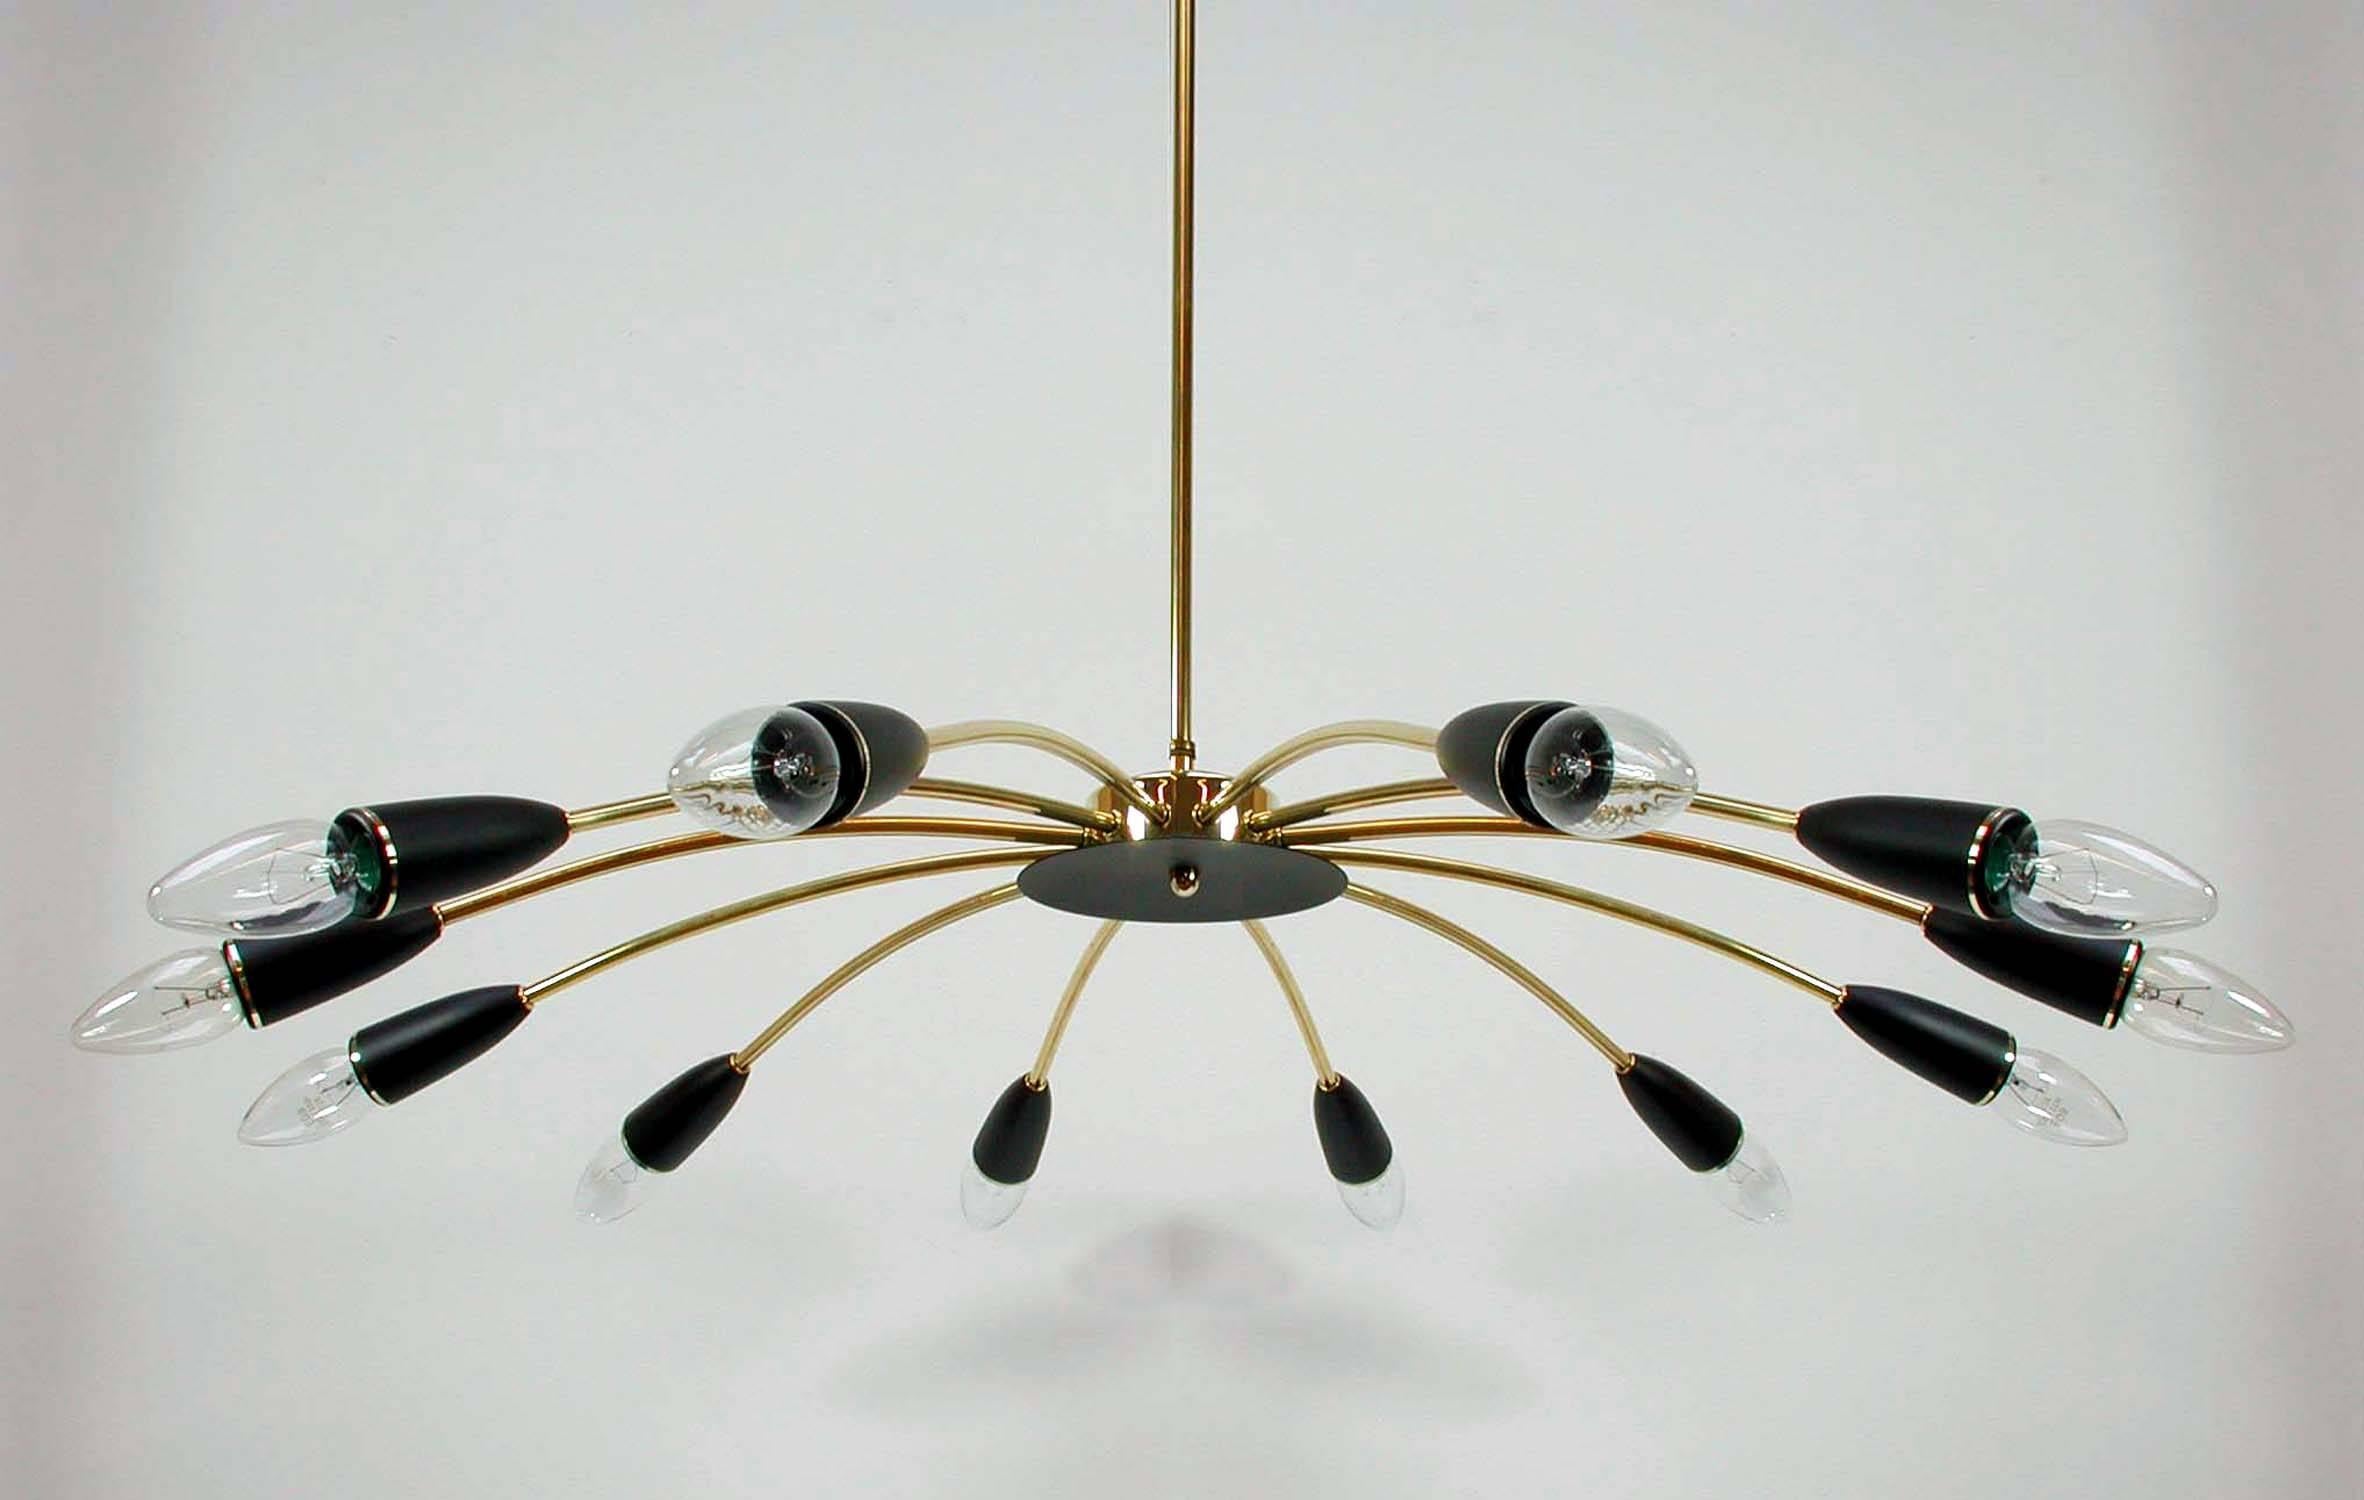 Dieser elegante Kronleuchter im Sputnik-Stil wurde in den 1950er Jahren in Italien hergestellt. Sie ist aus Messing gefertigt und hat 12 schwarz lackierte Bakelit-Glühbirnenfassungen.

Der Lampenstab aus Messing kann gekürzt oder entfernt werden.